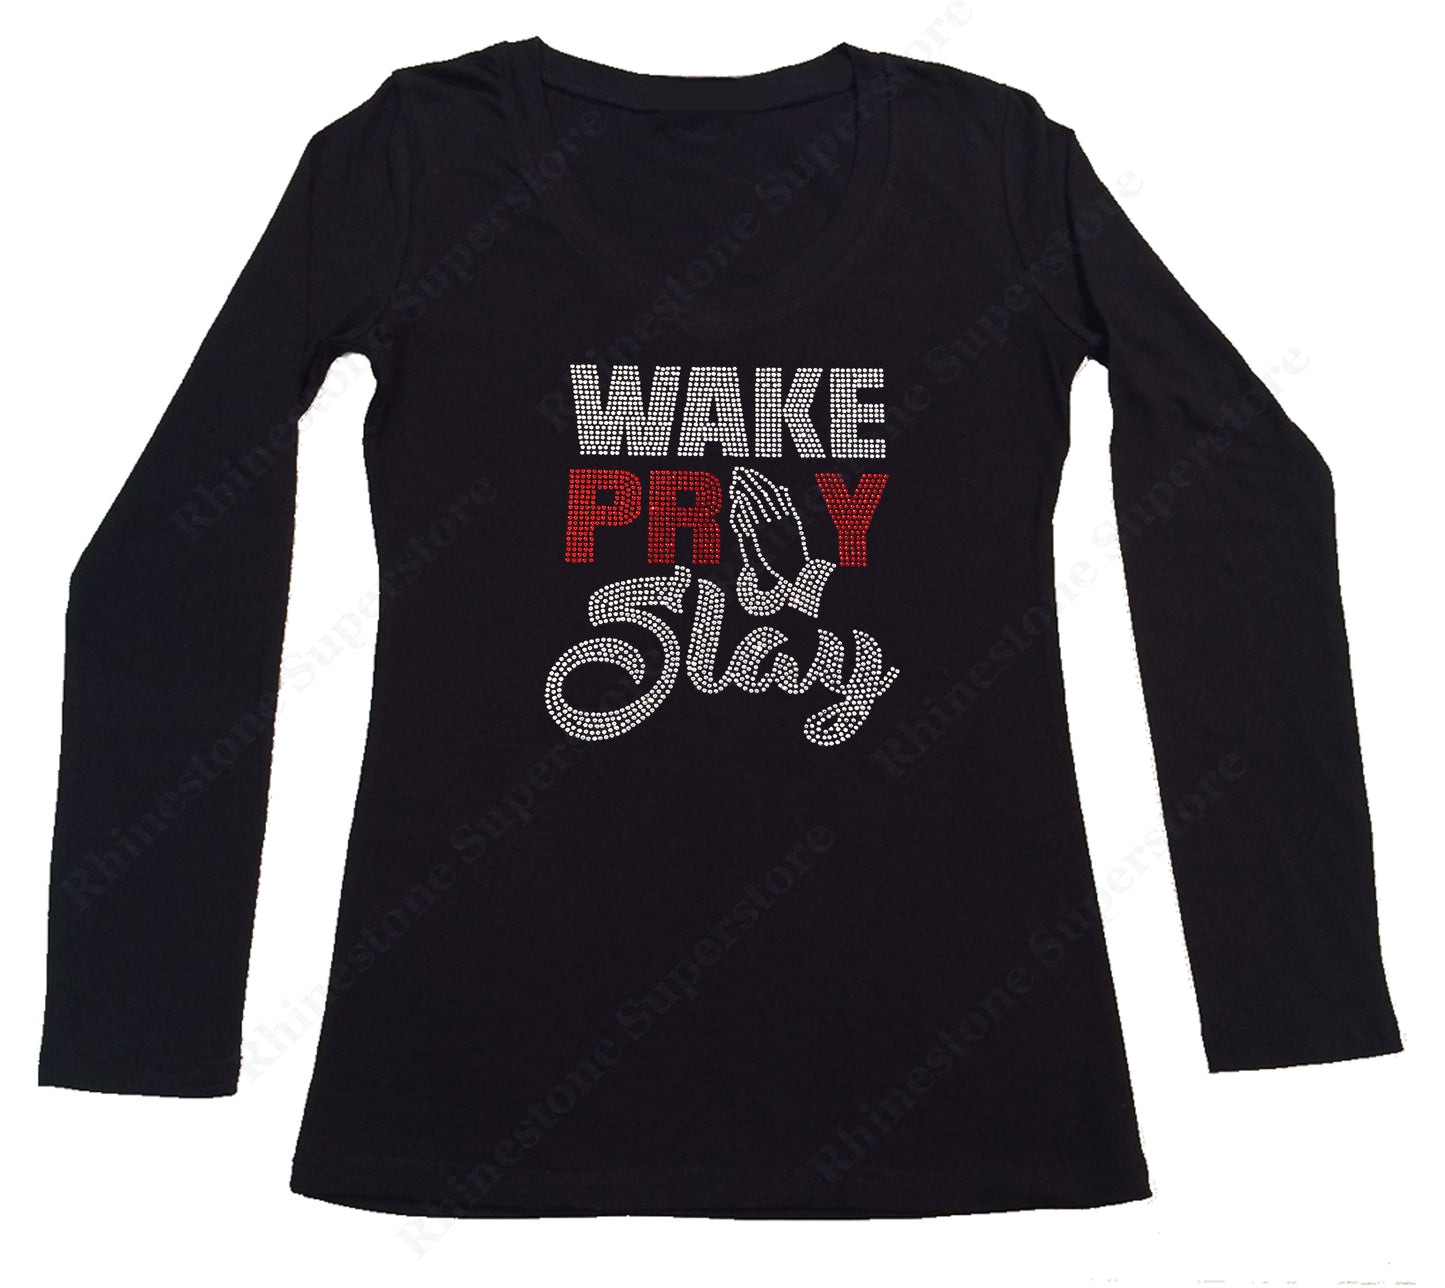 Womens T-shirt with Wake Pray Slay in Rhinestones